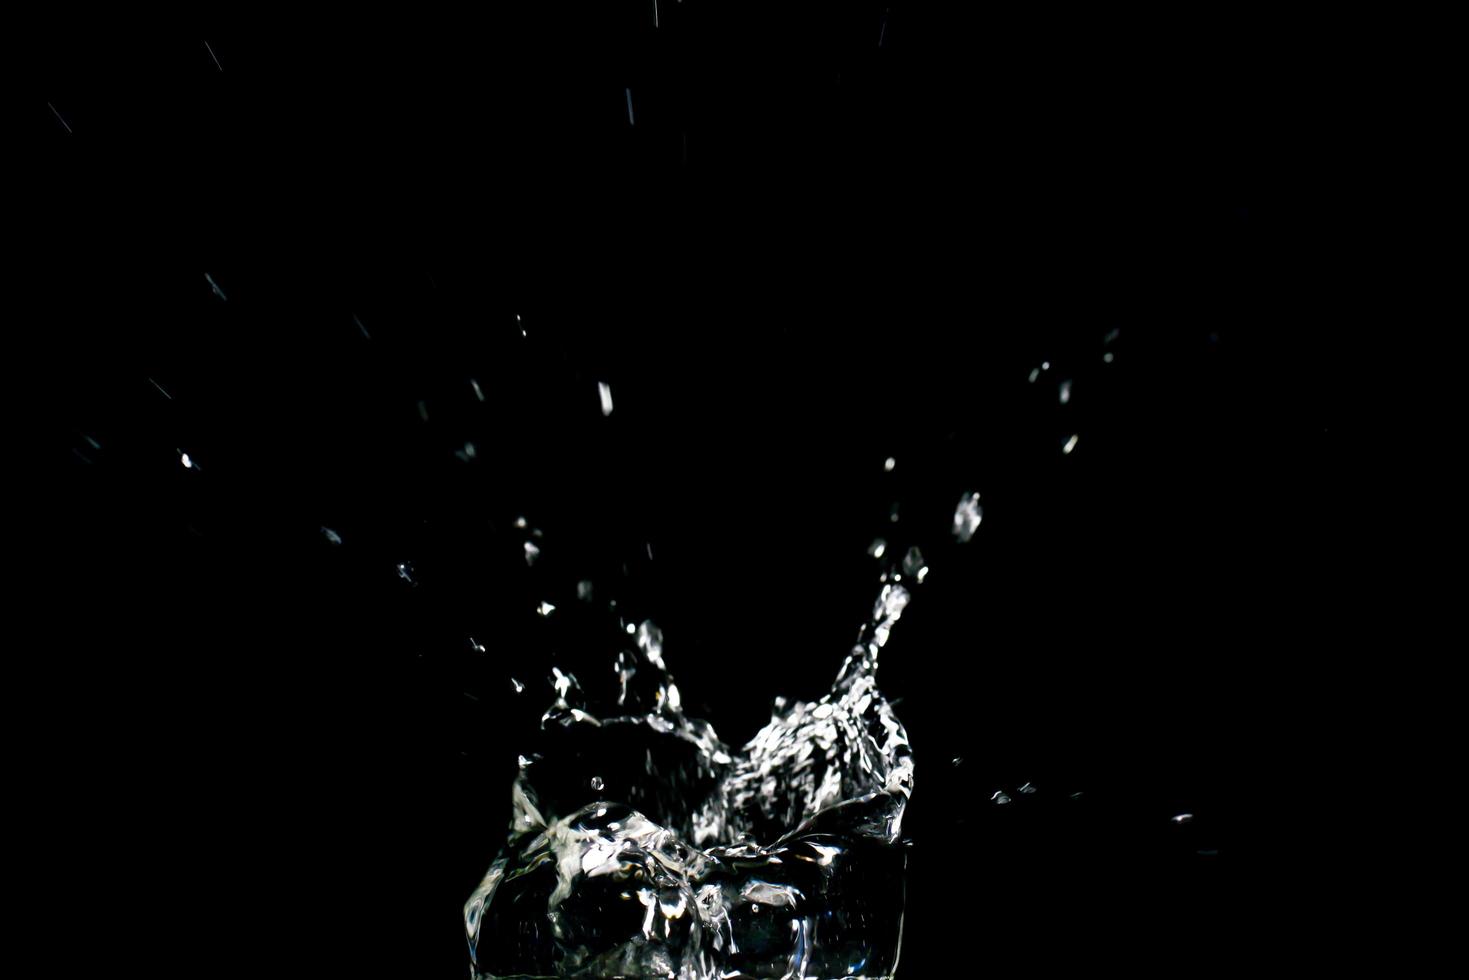 water spatten op een zwarte achtergrond. abstracte achtergrond van water verspreid op zwarte achtergrond foto